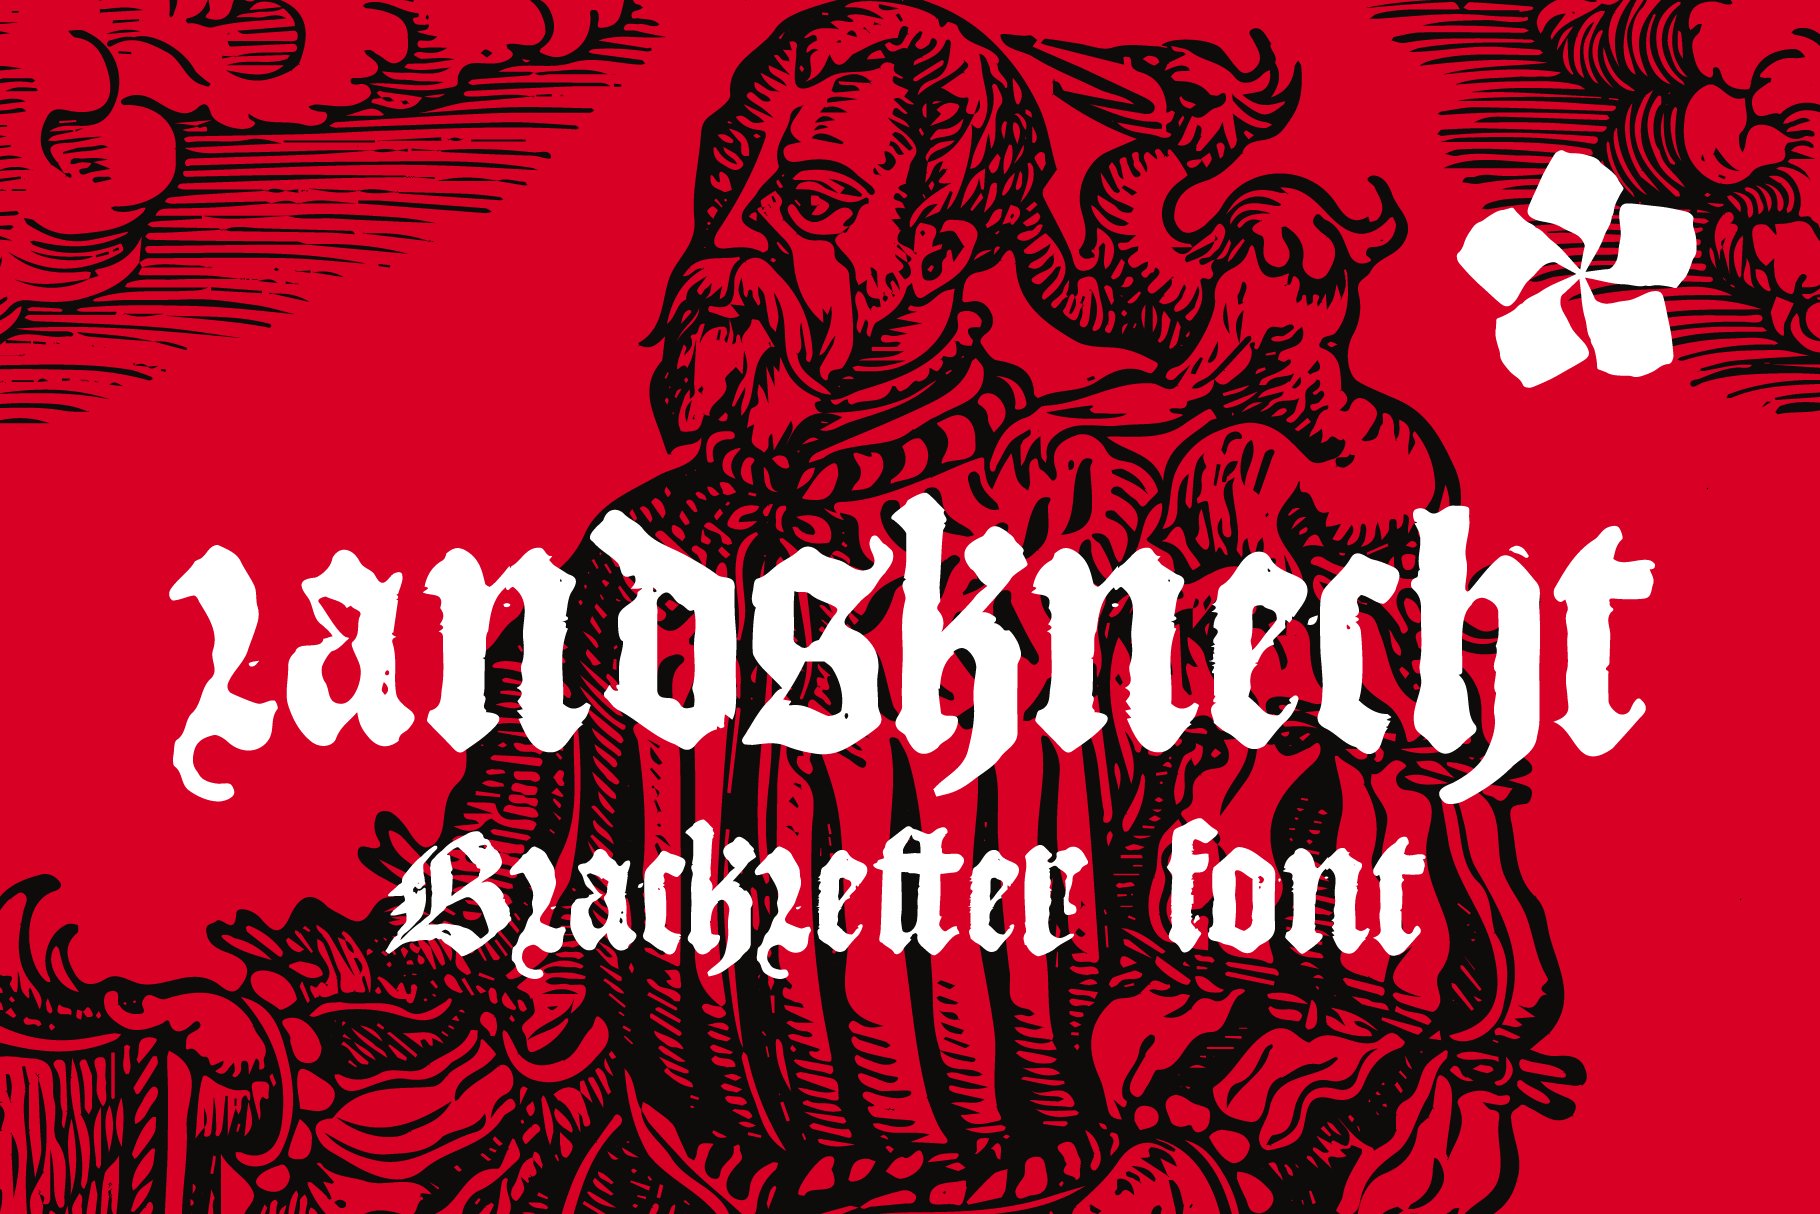 Landsknecht blackletter style font cover image.